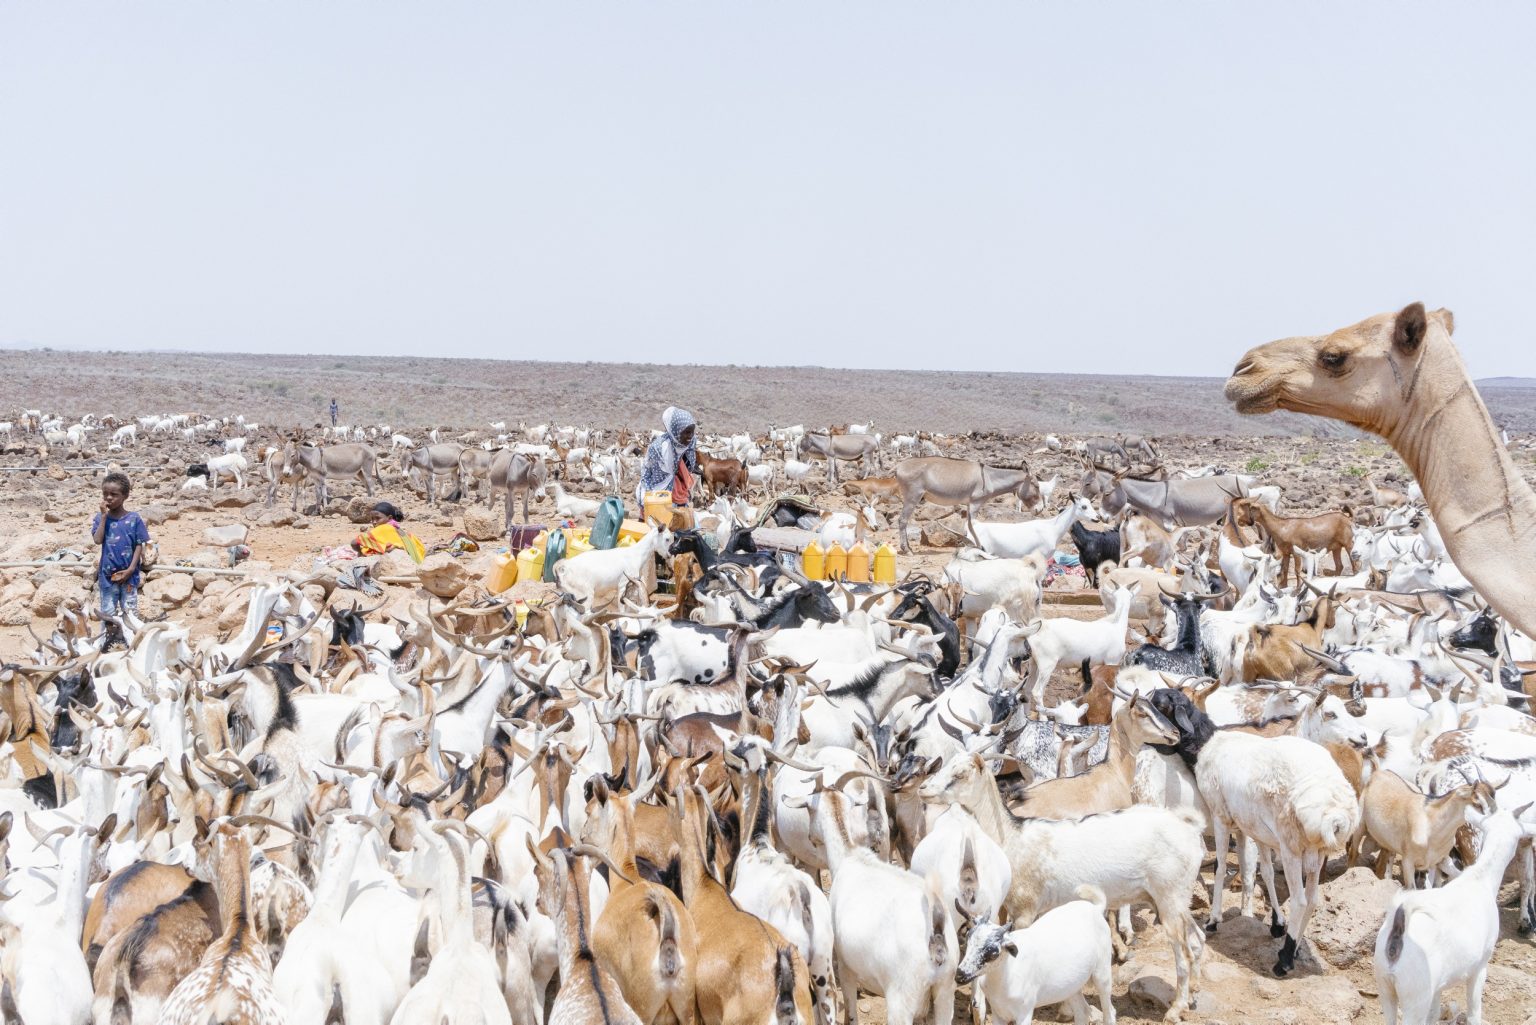 DJIBUTI. 13 settembre 2021 - Pastori con il loro gregge fuori da una base militare dell'esercito di Gibuti.

DJIBOUTI. 13 September 2021 - Shepherds with their animals outside a military base of the Djibouti army.